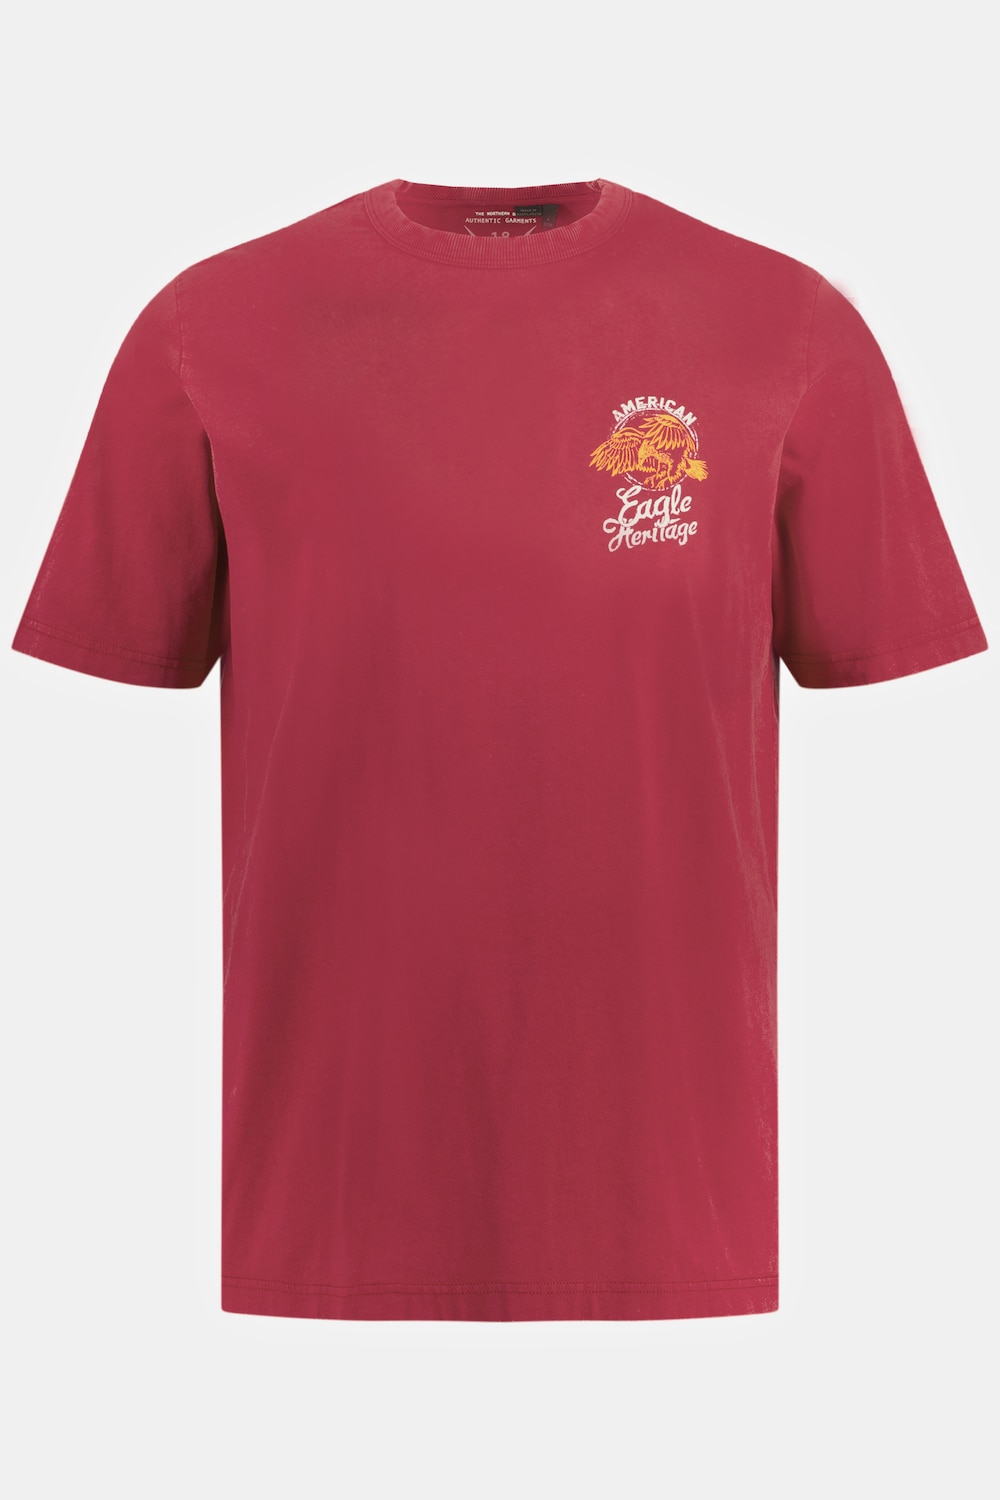 Grote Maten T-shirt, Heren, rood, Maat: XXL, Katoen, JP1880